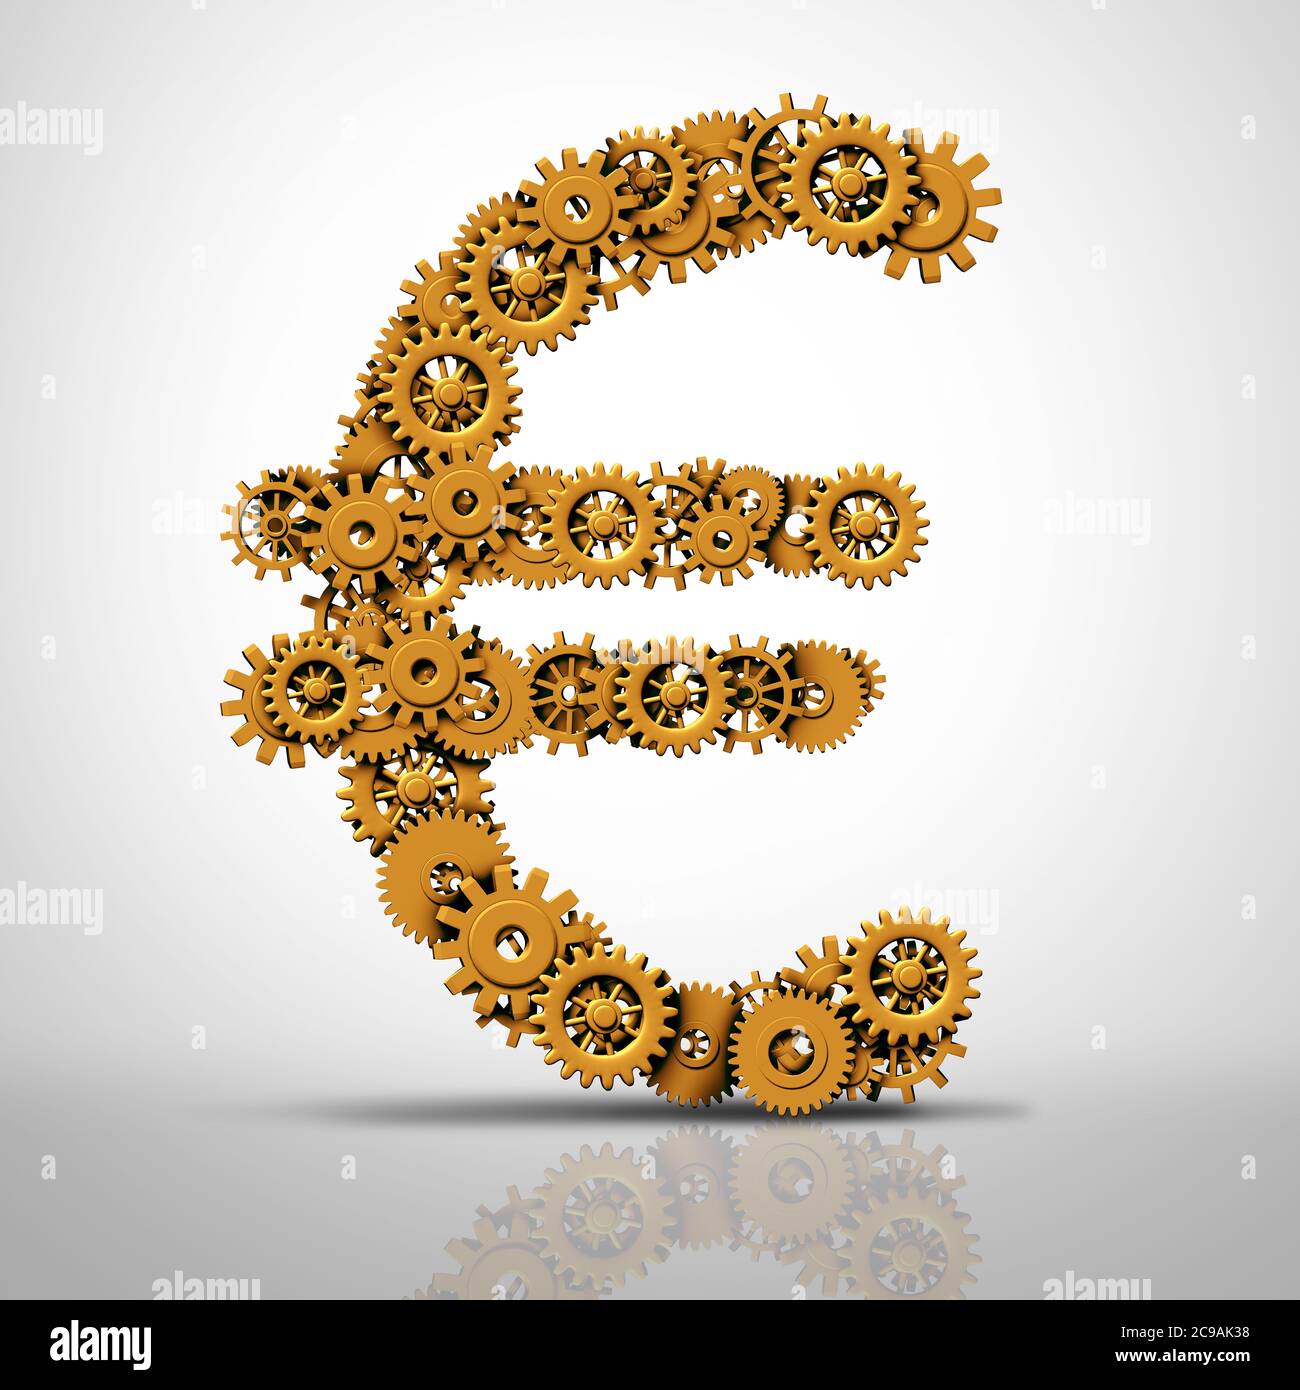 Europäisches Industriesymbol und Euro-Geldsymbol als Gruppe von Zahnrädern und Zahnrädern als Wirtschafts- oder Wirtschaftssymbol für Unternehmen in Deutschland oder Frankreich und Italien. Stockfoto